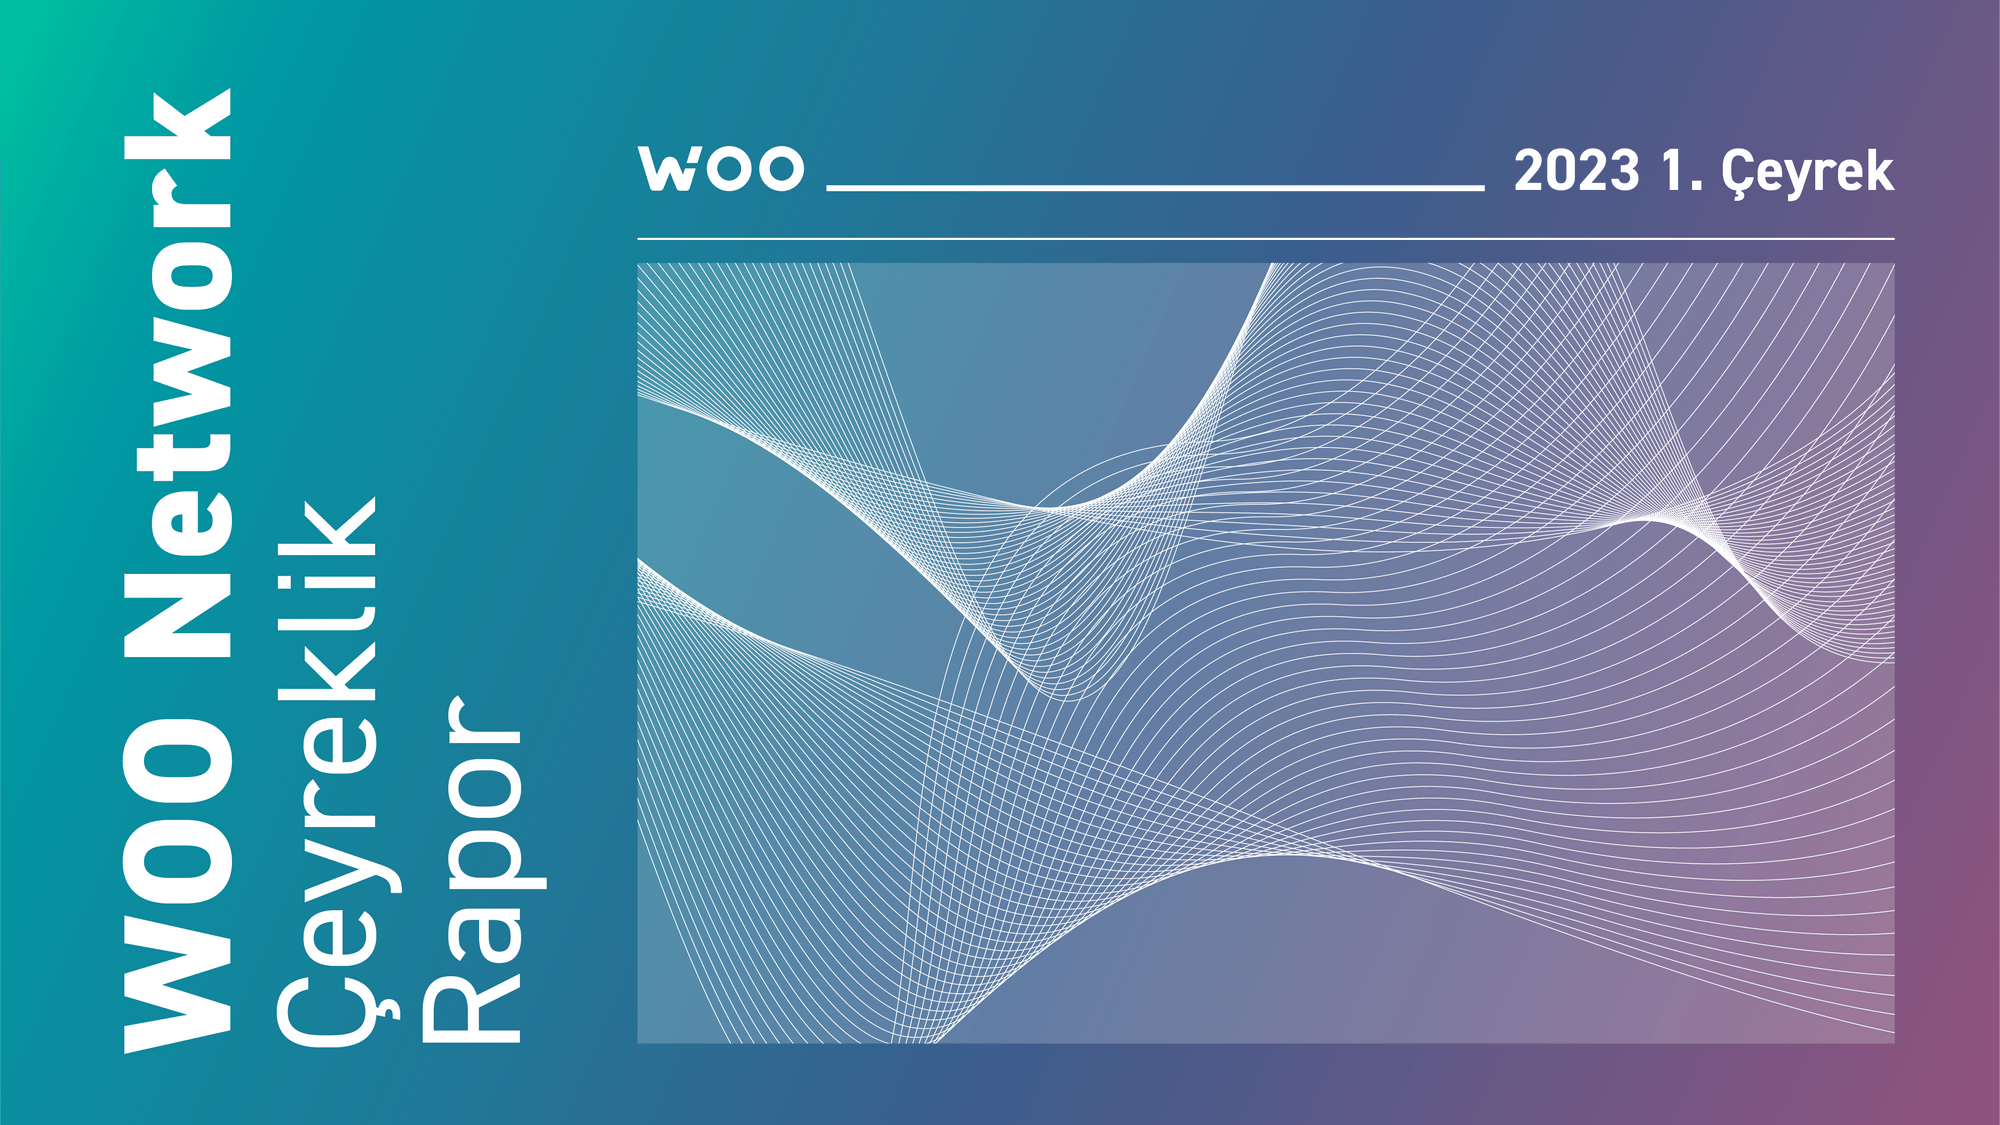 WOO Network'ü Anlamak: 2023 1. Çeyrek Raporu